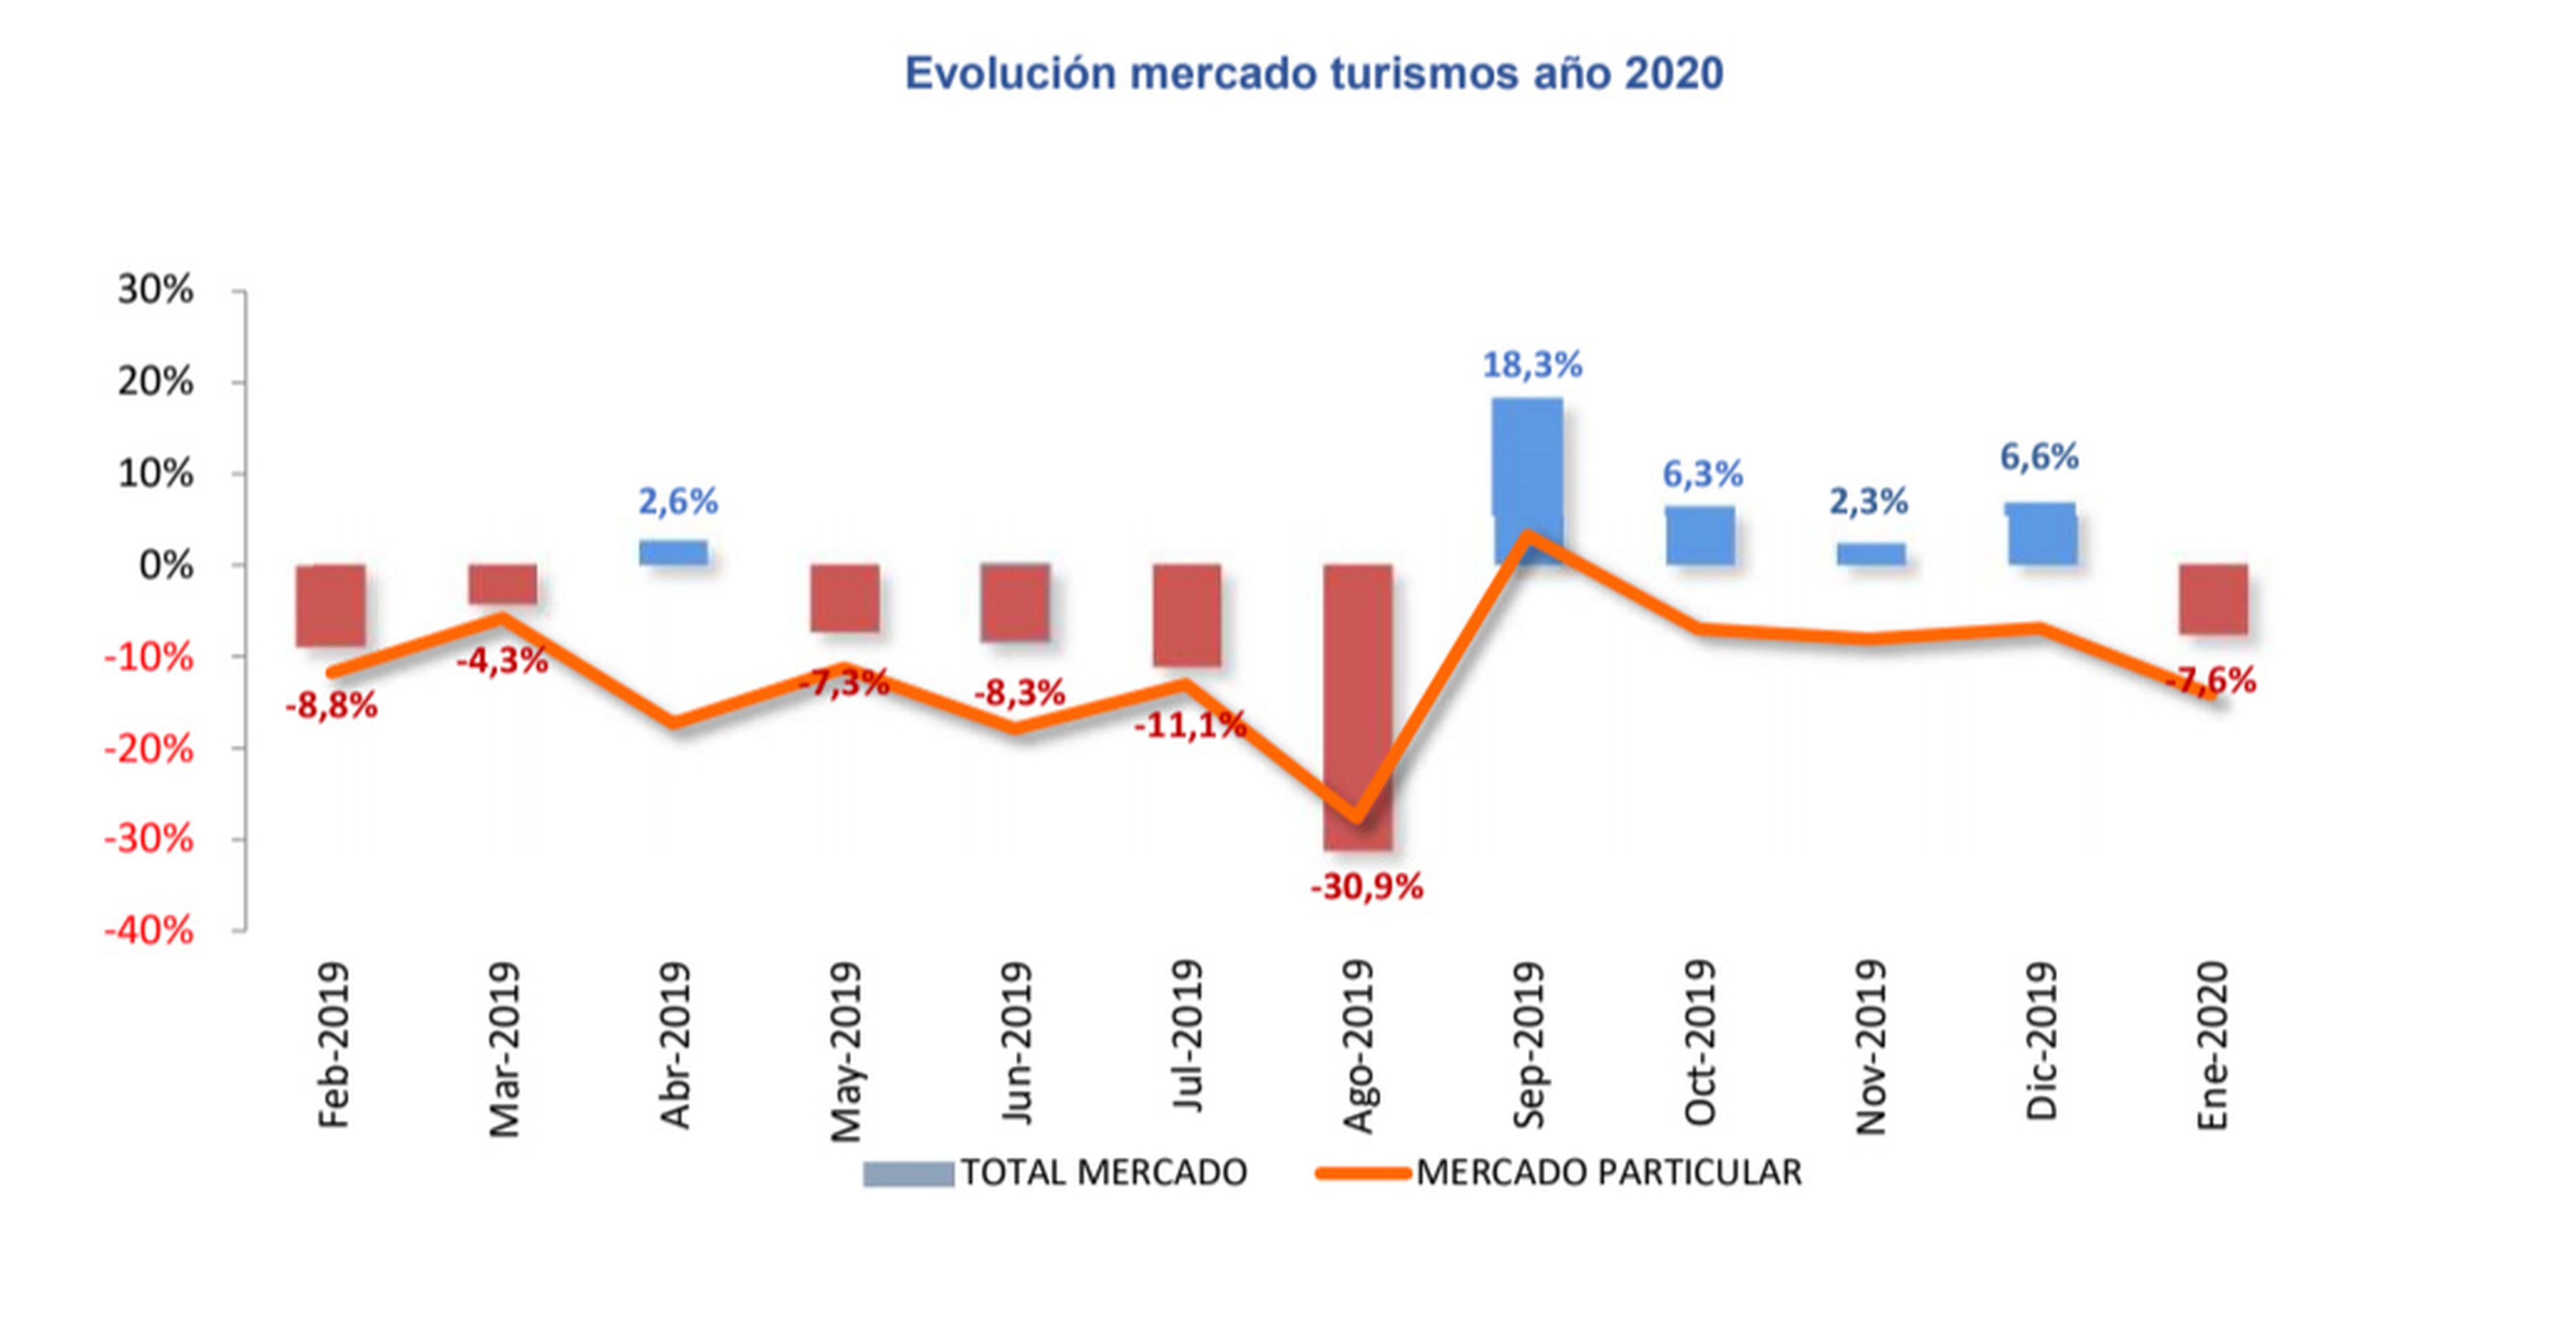 Evolución del mercado 2019-2020. Gráfico de Faconauto con datos de Ideauto